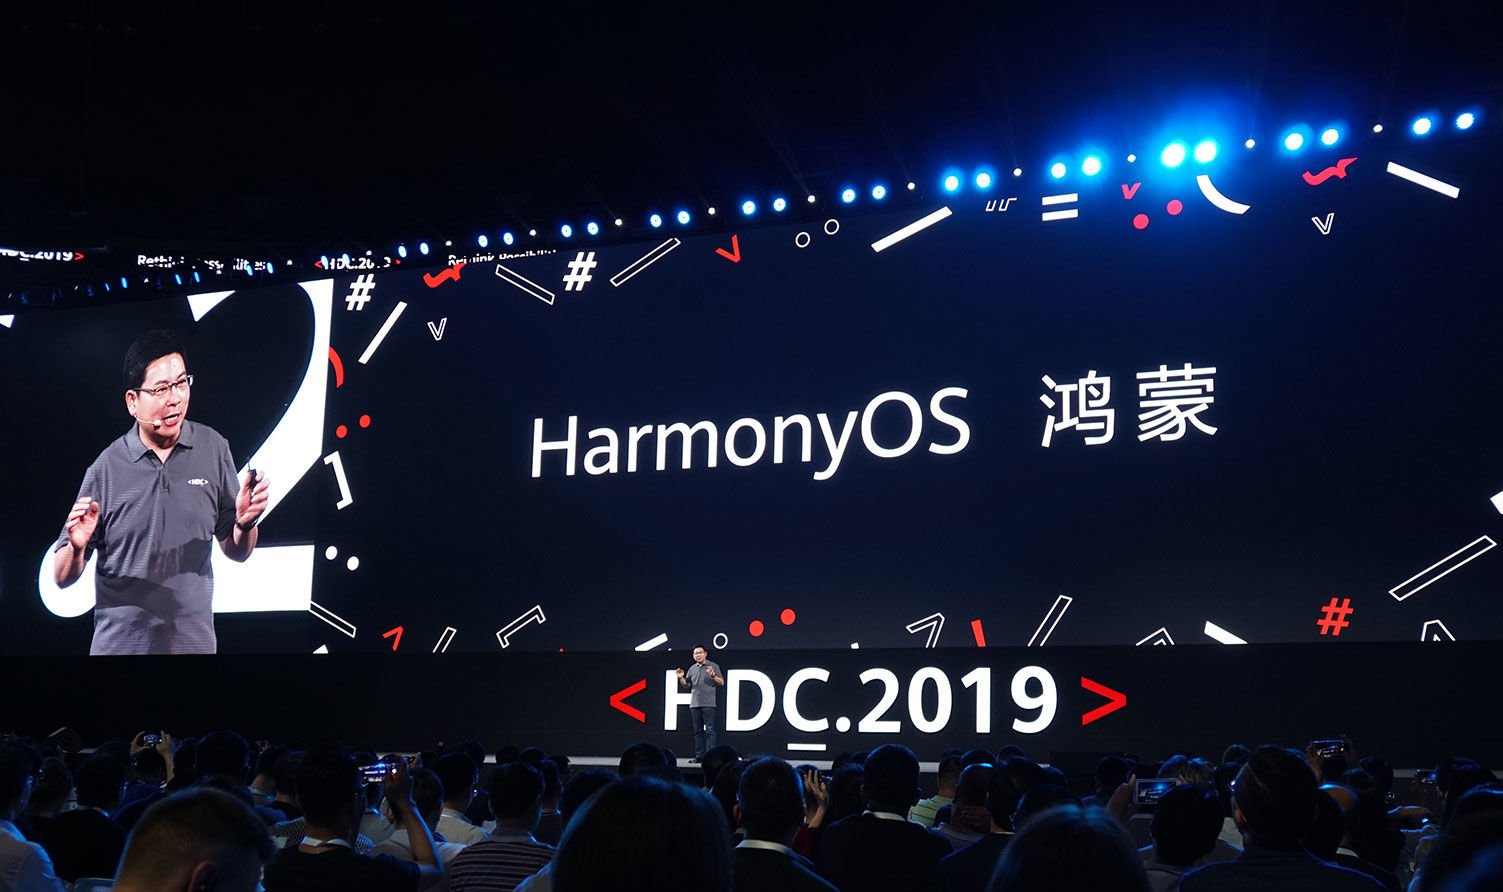 إنه رسمي! HarmonyOS ، وصل نظام التشغيل الجديد من Huawei